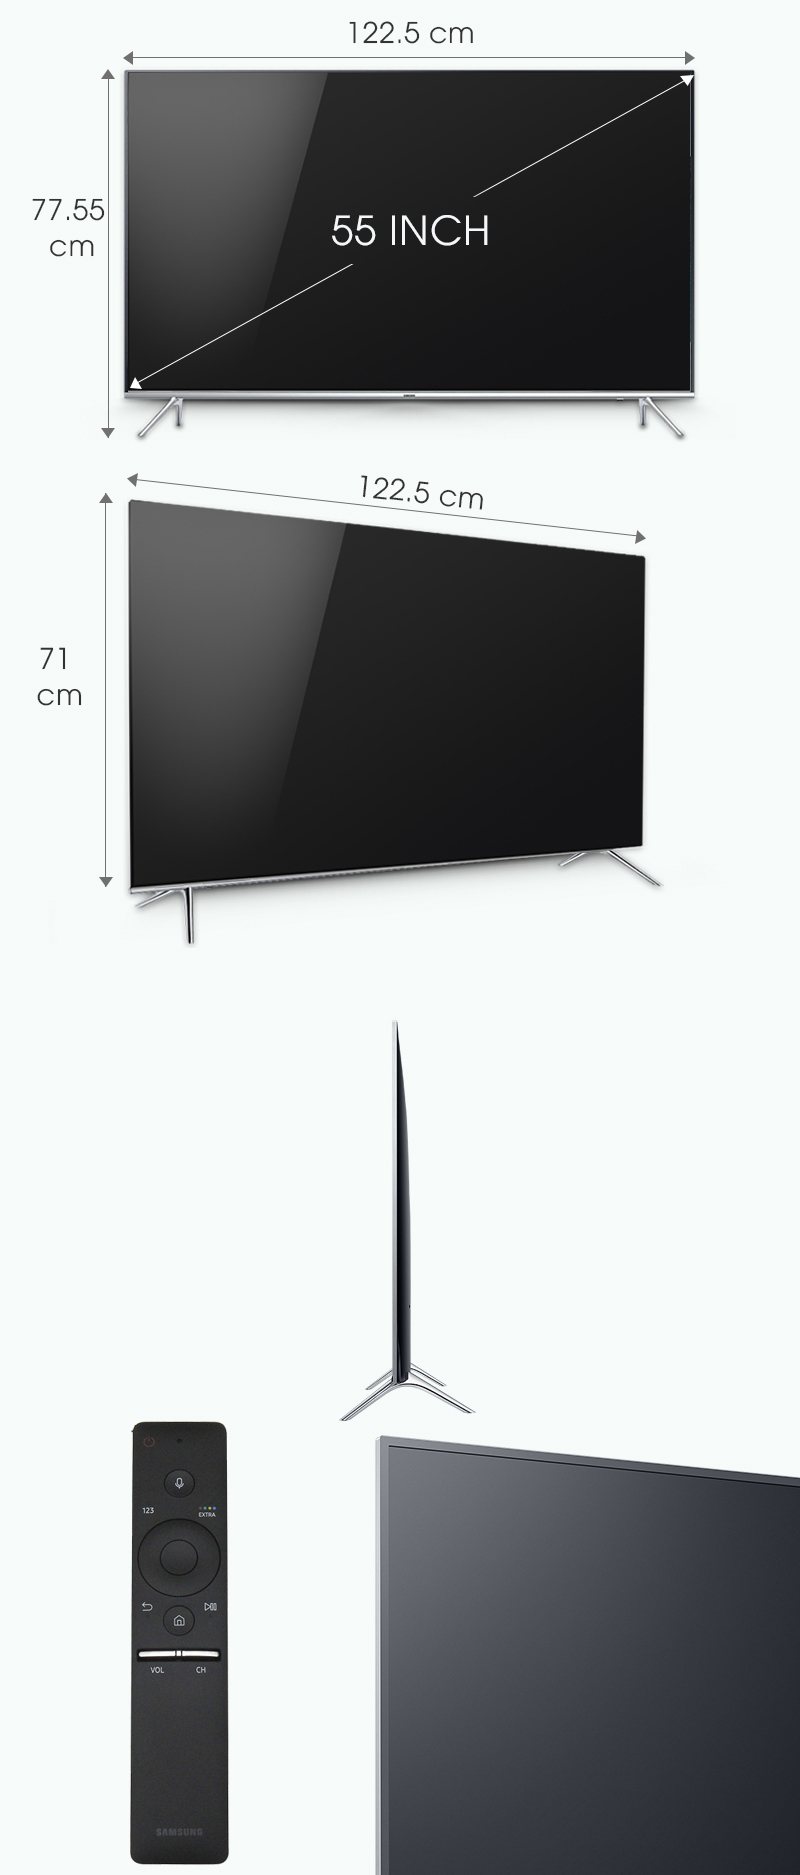 Smart tivi Samsung 55 inch UA55KS7000 - Kích thước tivi